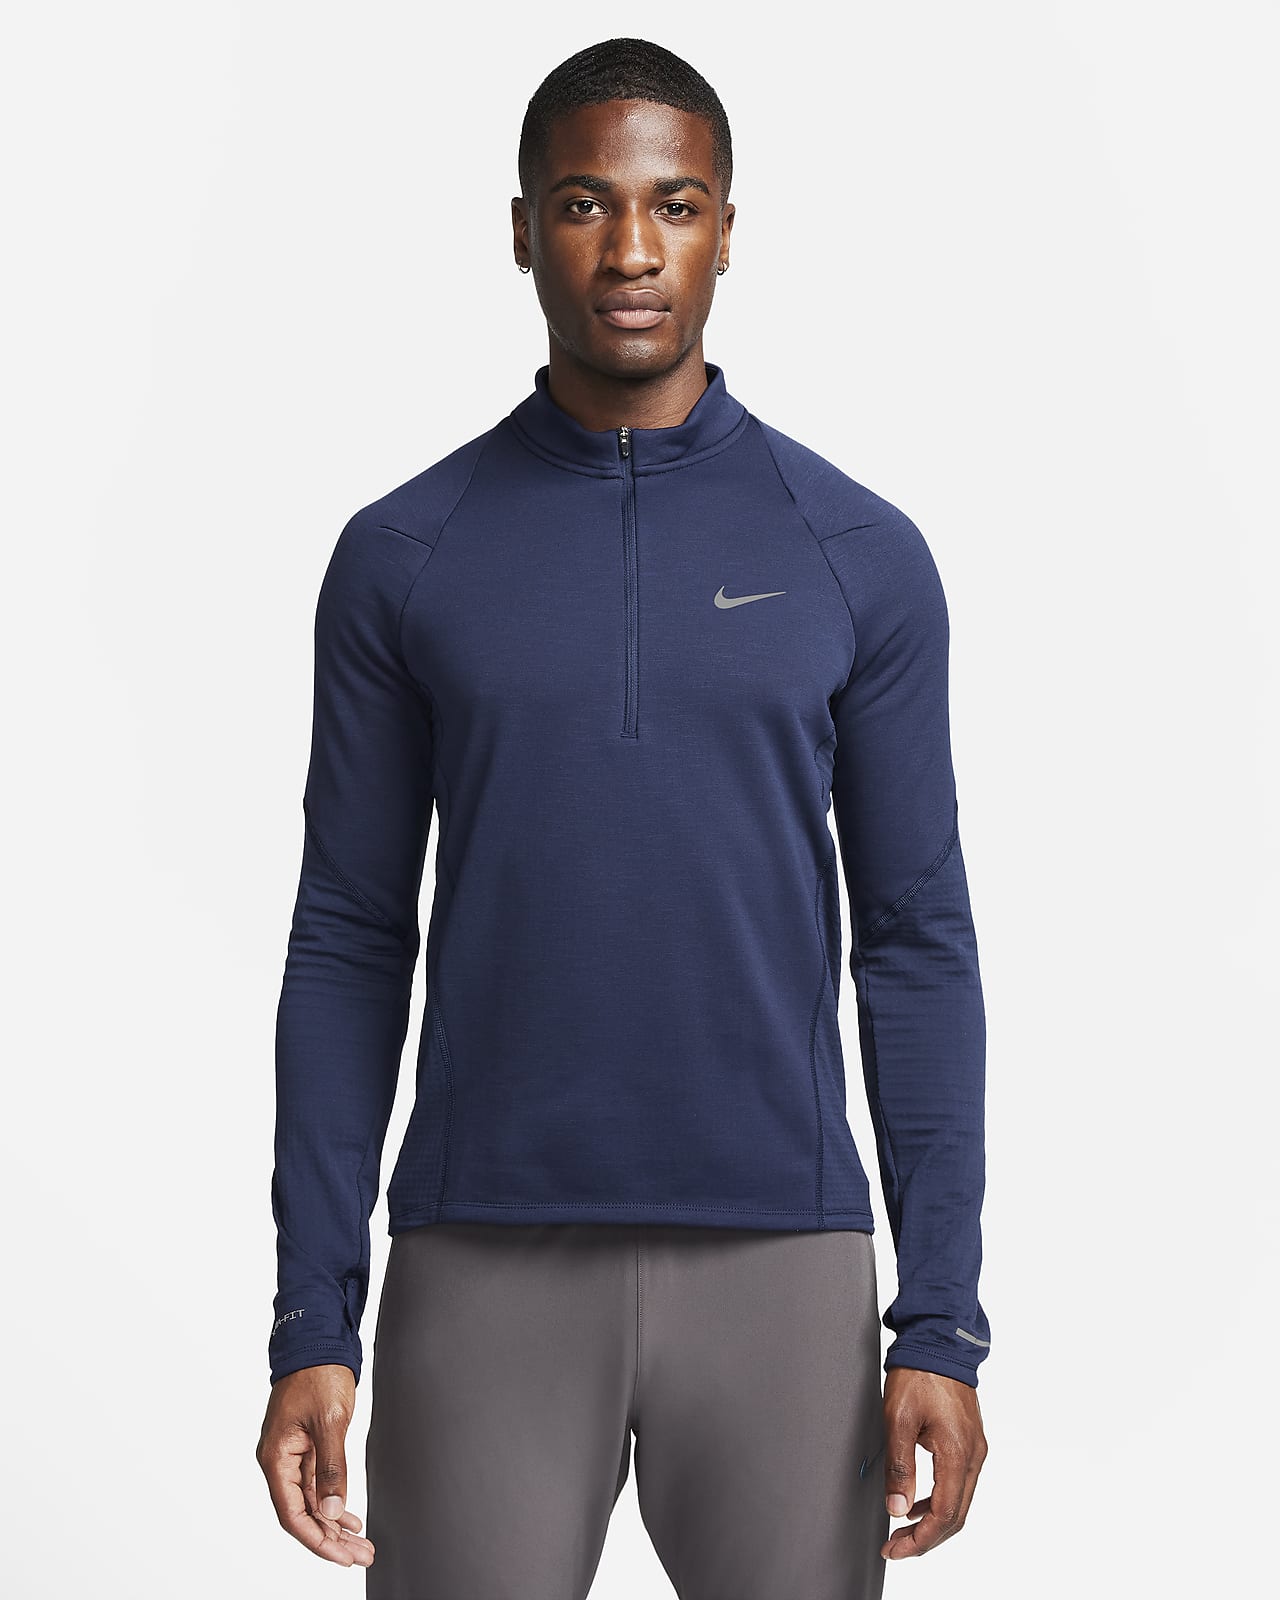 Ανδρική μπλούζα Therma-FIT για τρέξιμο με φερμουάρ στο 1/2 του μήκους Nike Repel